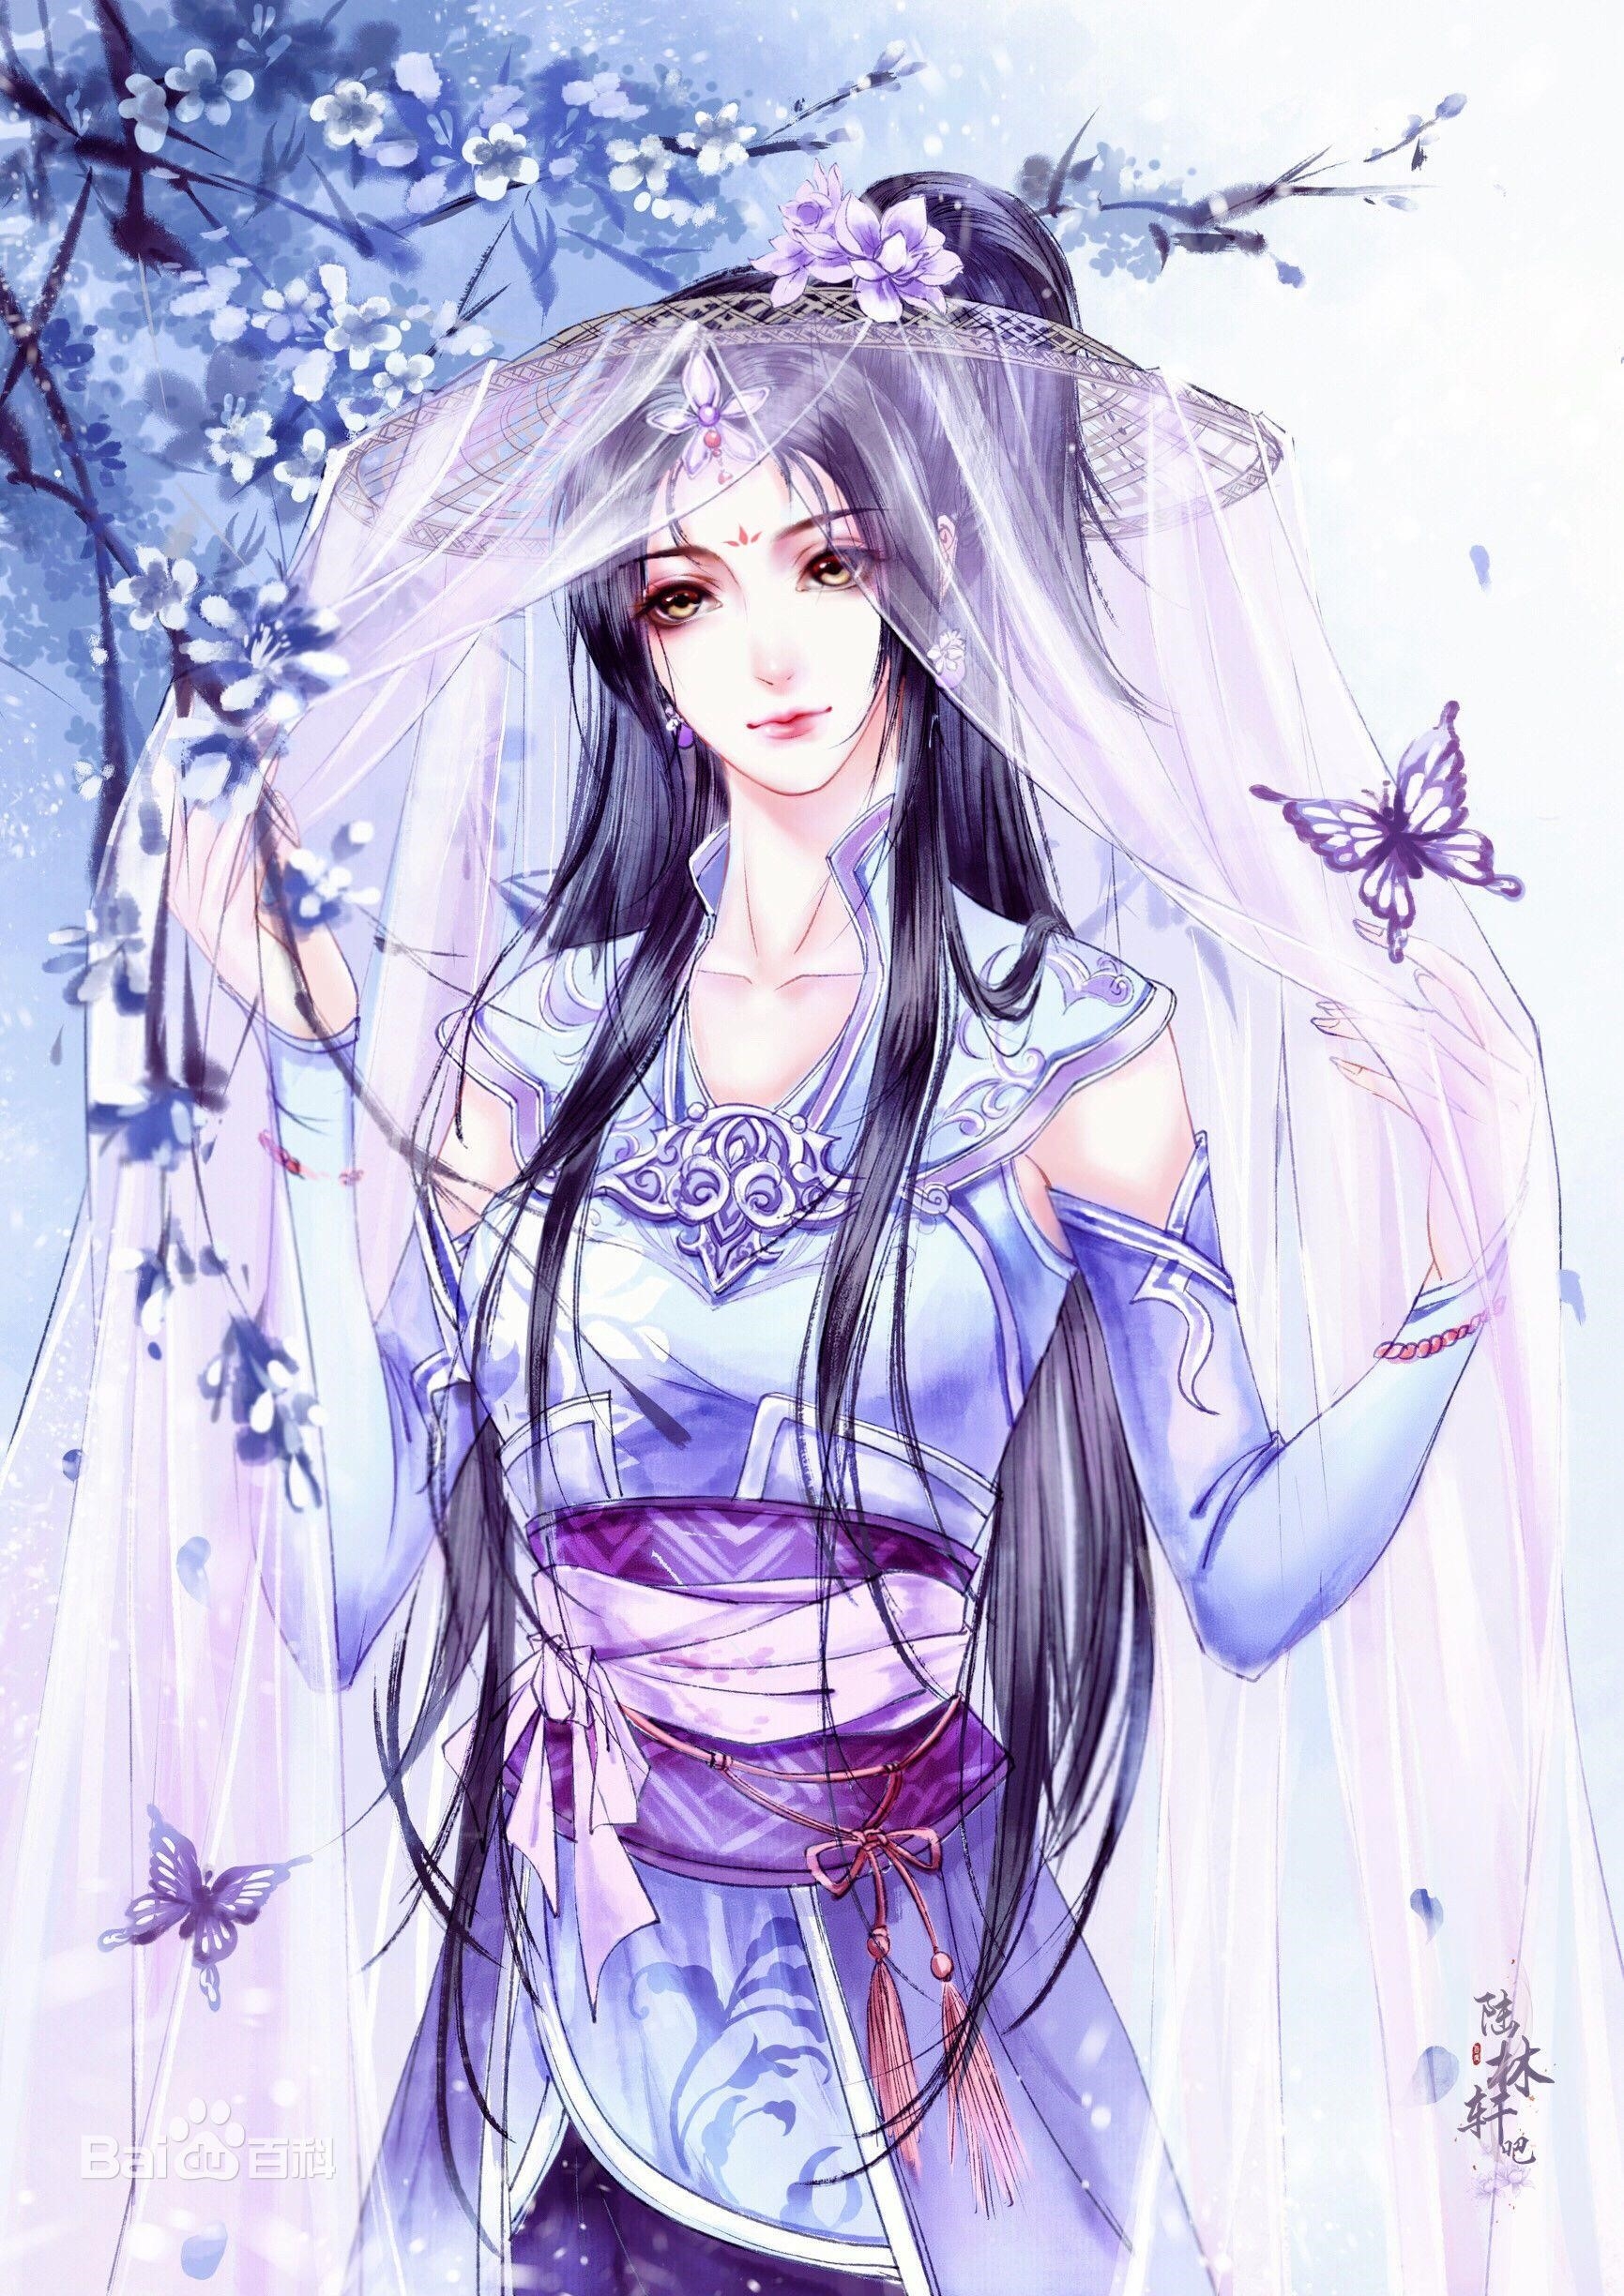 Hình ảnh của nhân vật nữ trong trang phục cổ trang Trung Quốc trong phong cách anime.